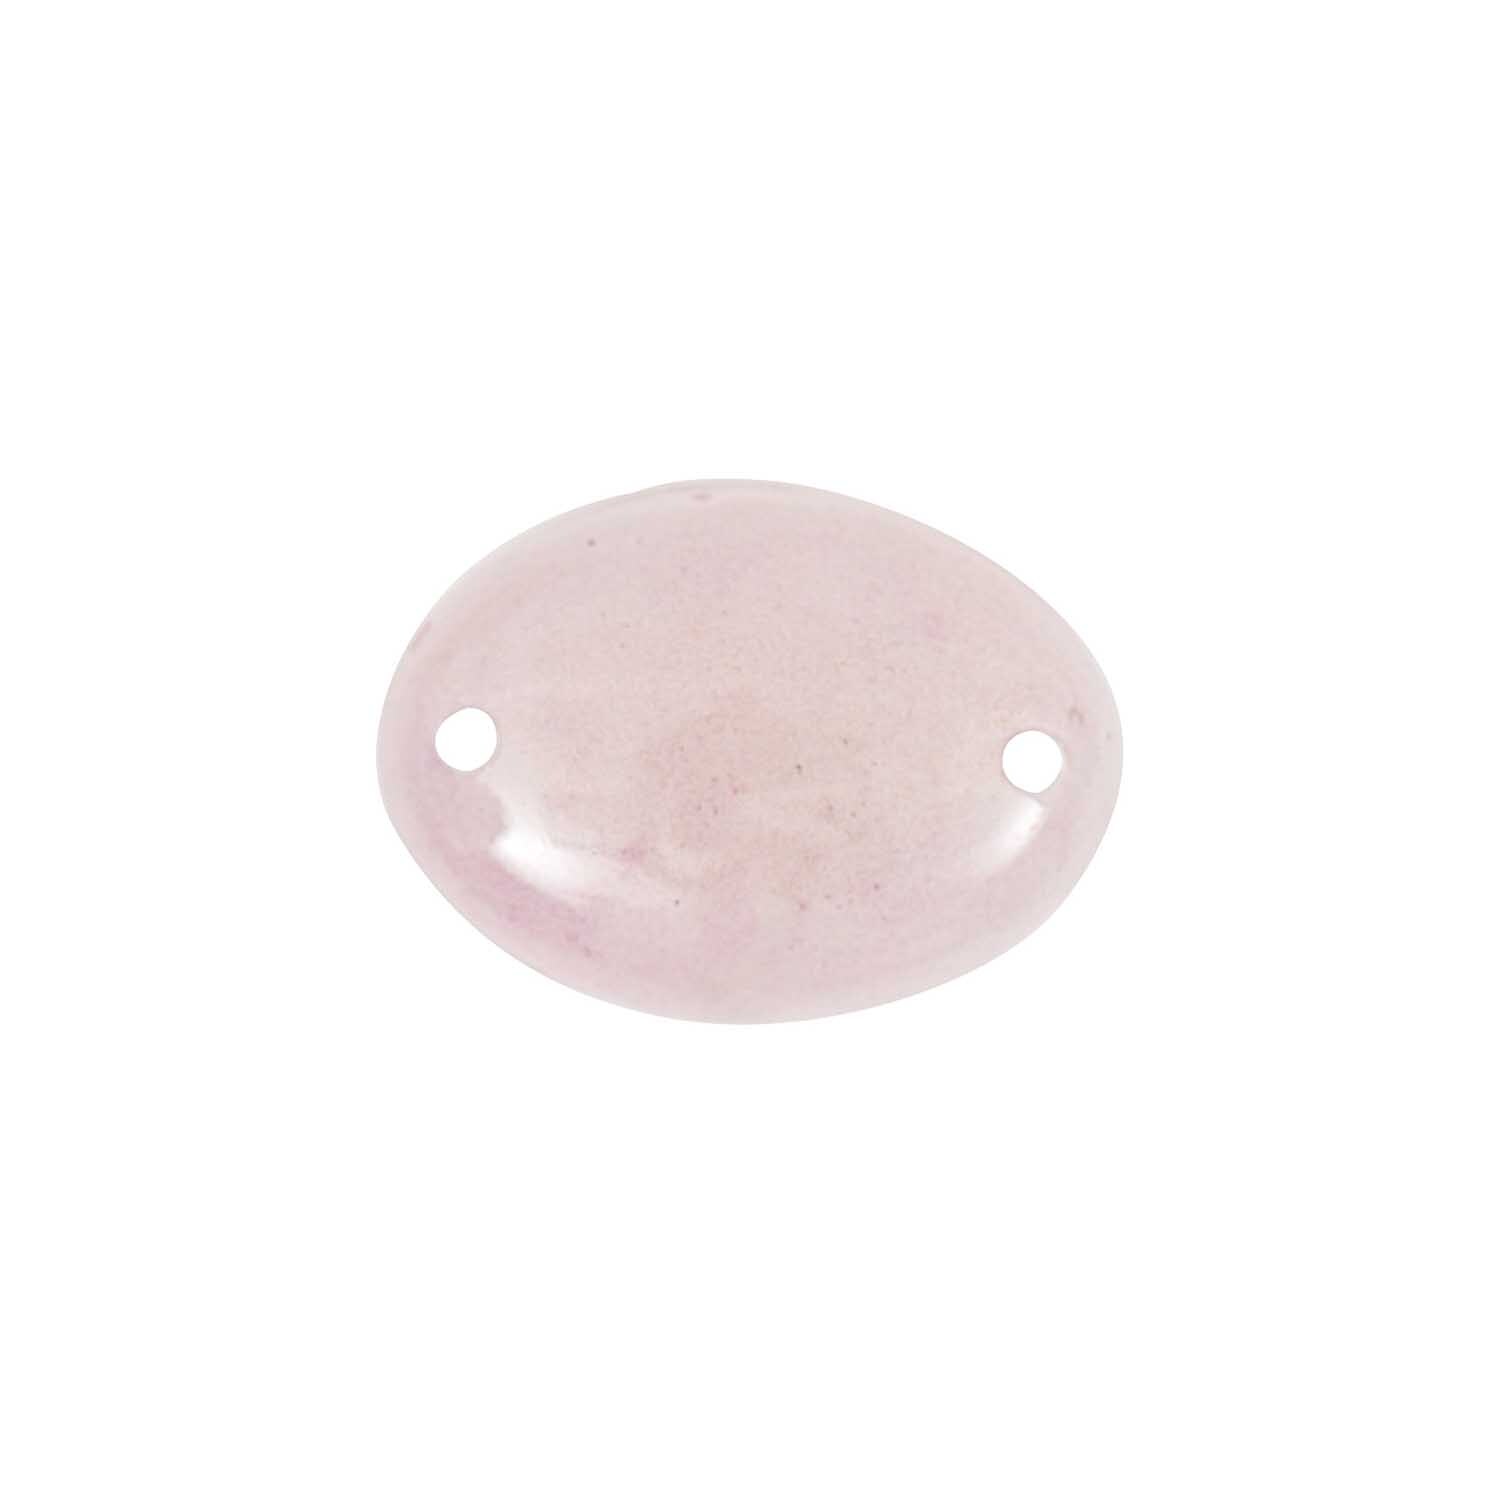 Aufnähstein oval rosa 18x13mm 5 Stück